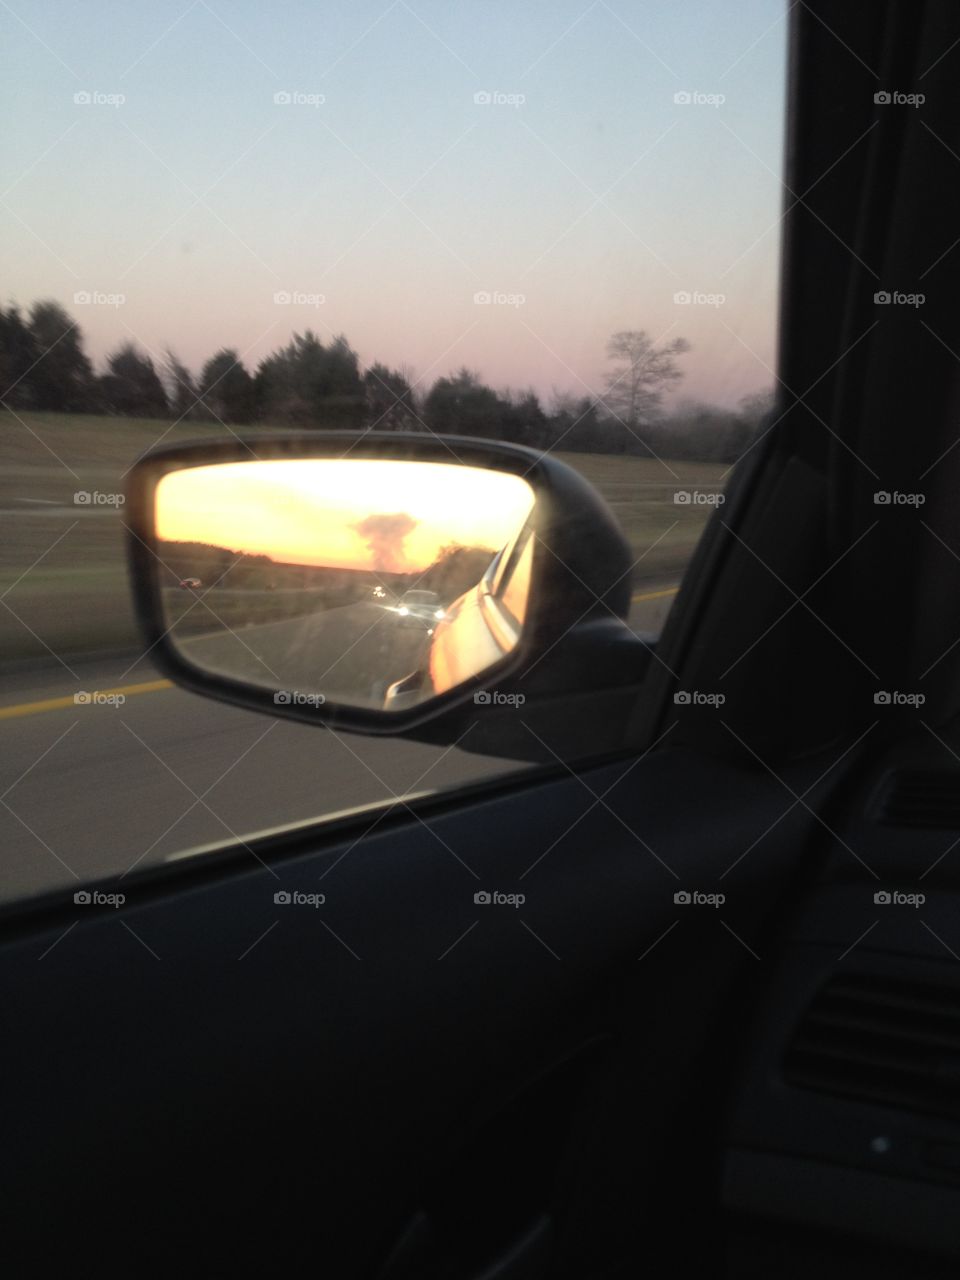 Mushroom smoke cloud in side rear view mirror.